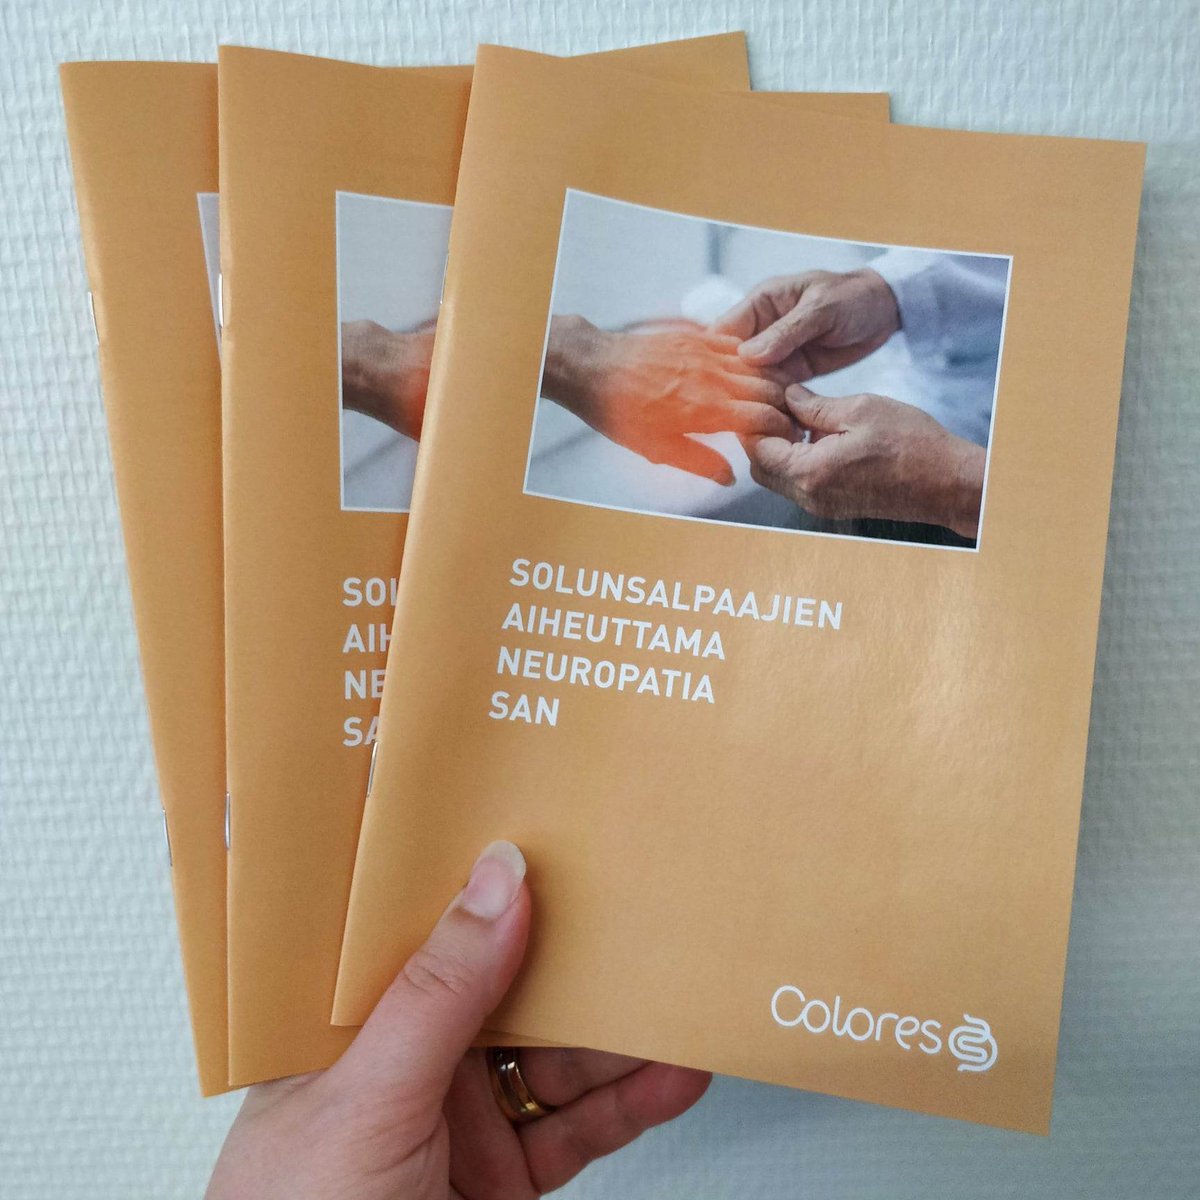 Ensimmäinen suomenkielinen opas solunsalpaajien aiheuttamasta neuropatiasta on julkaistu! Tilaa painettu opas tai tutustu oppaan sähköiseen versioon: colores.fi/kauppa/
#neuropatia #suolistosyöpä